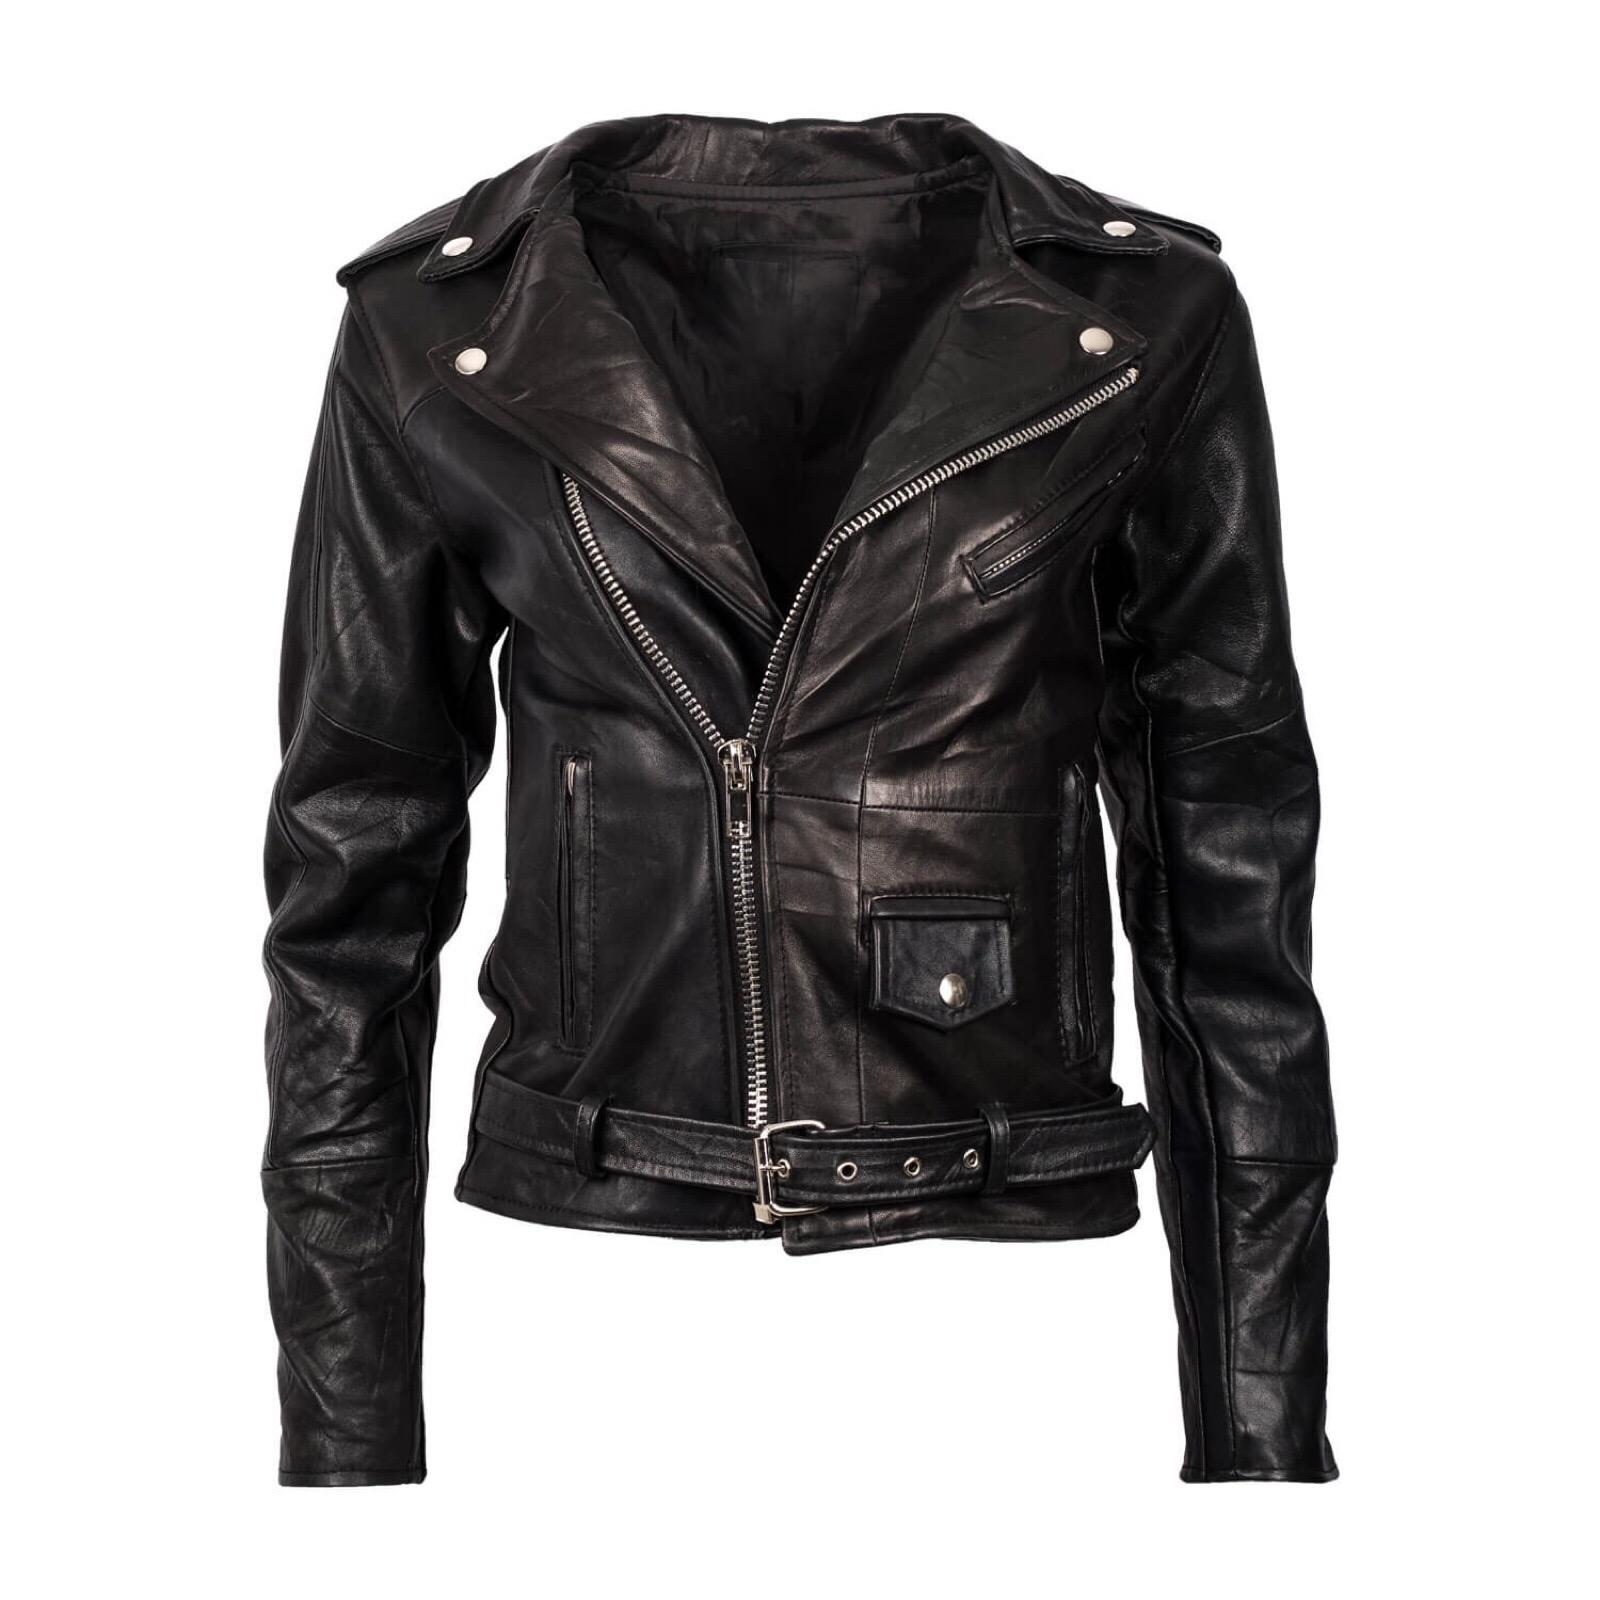 black leather motorcycle jacket